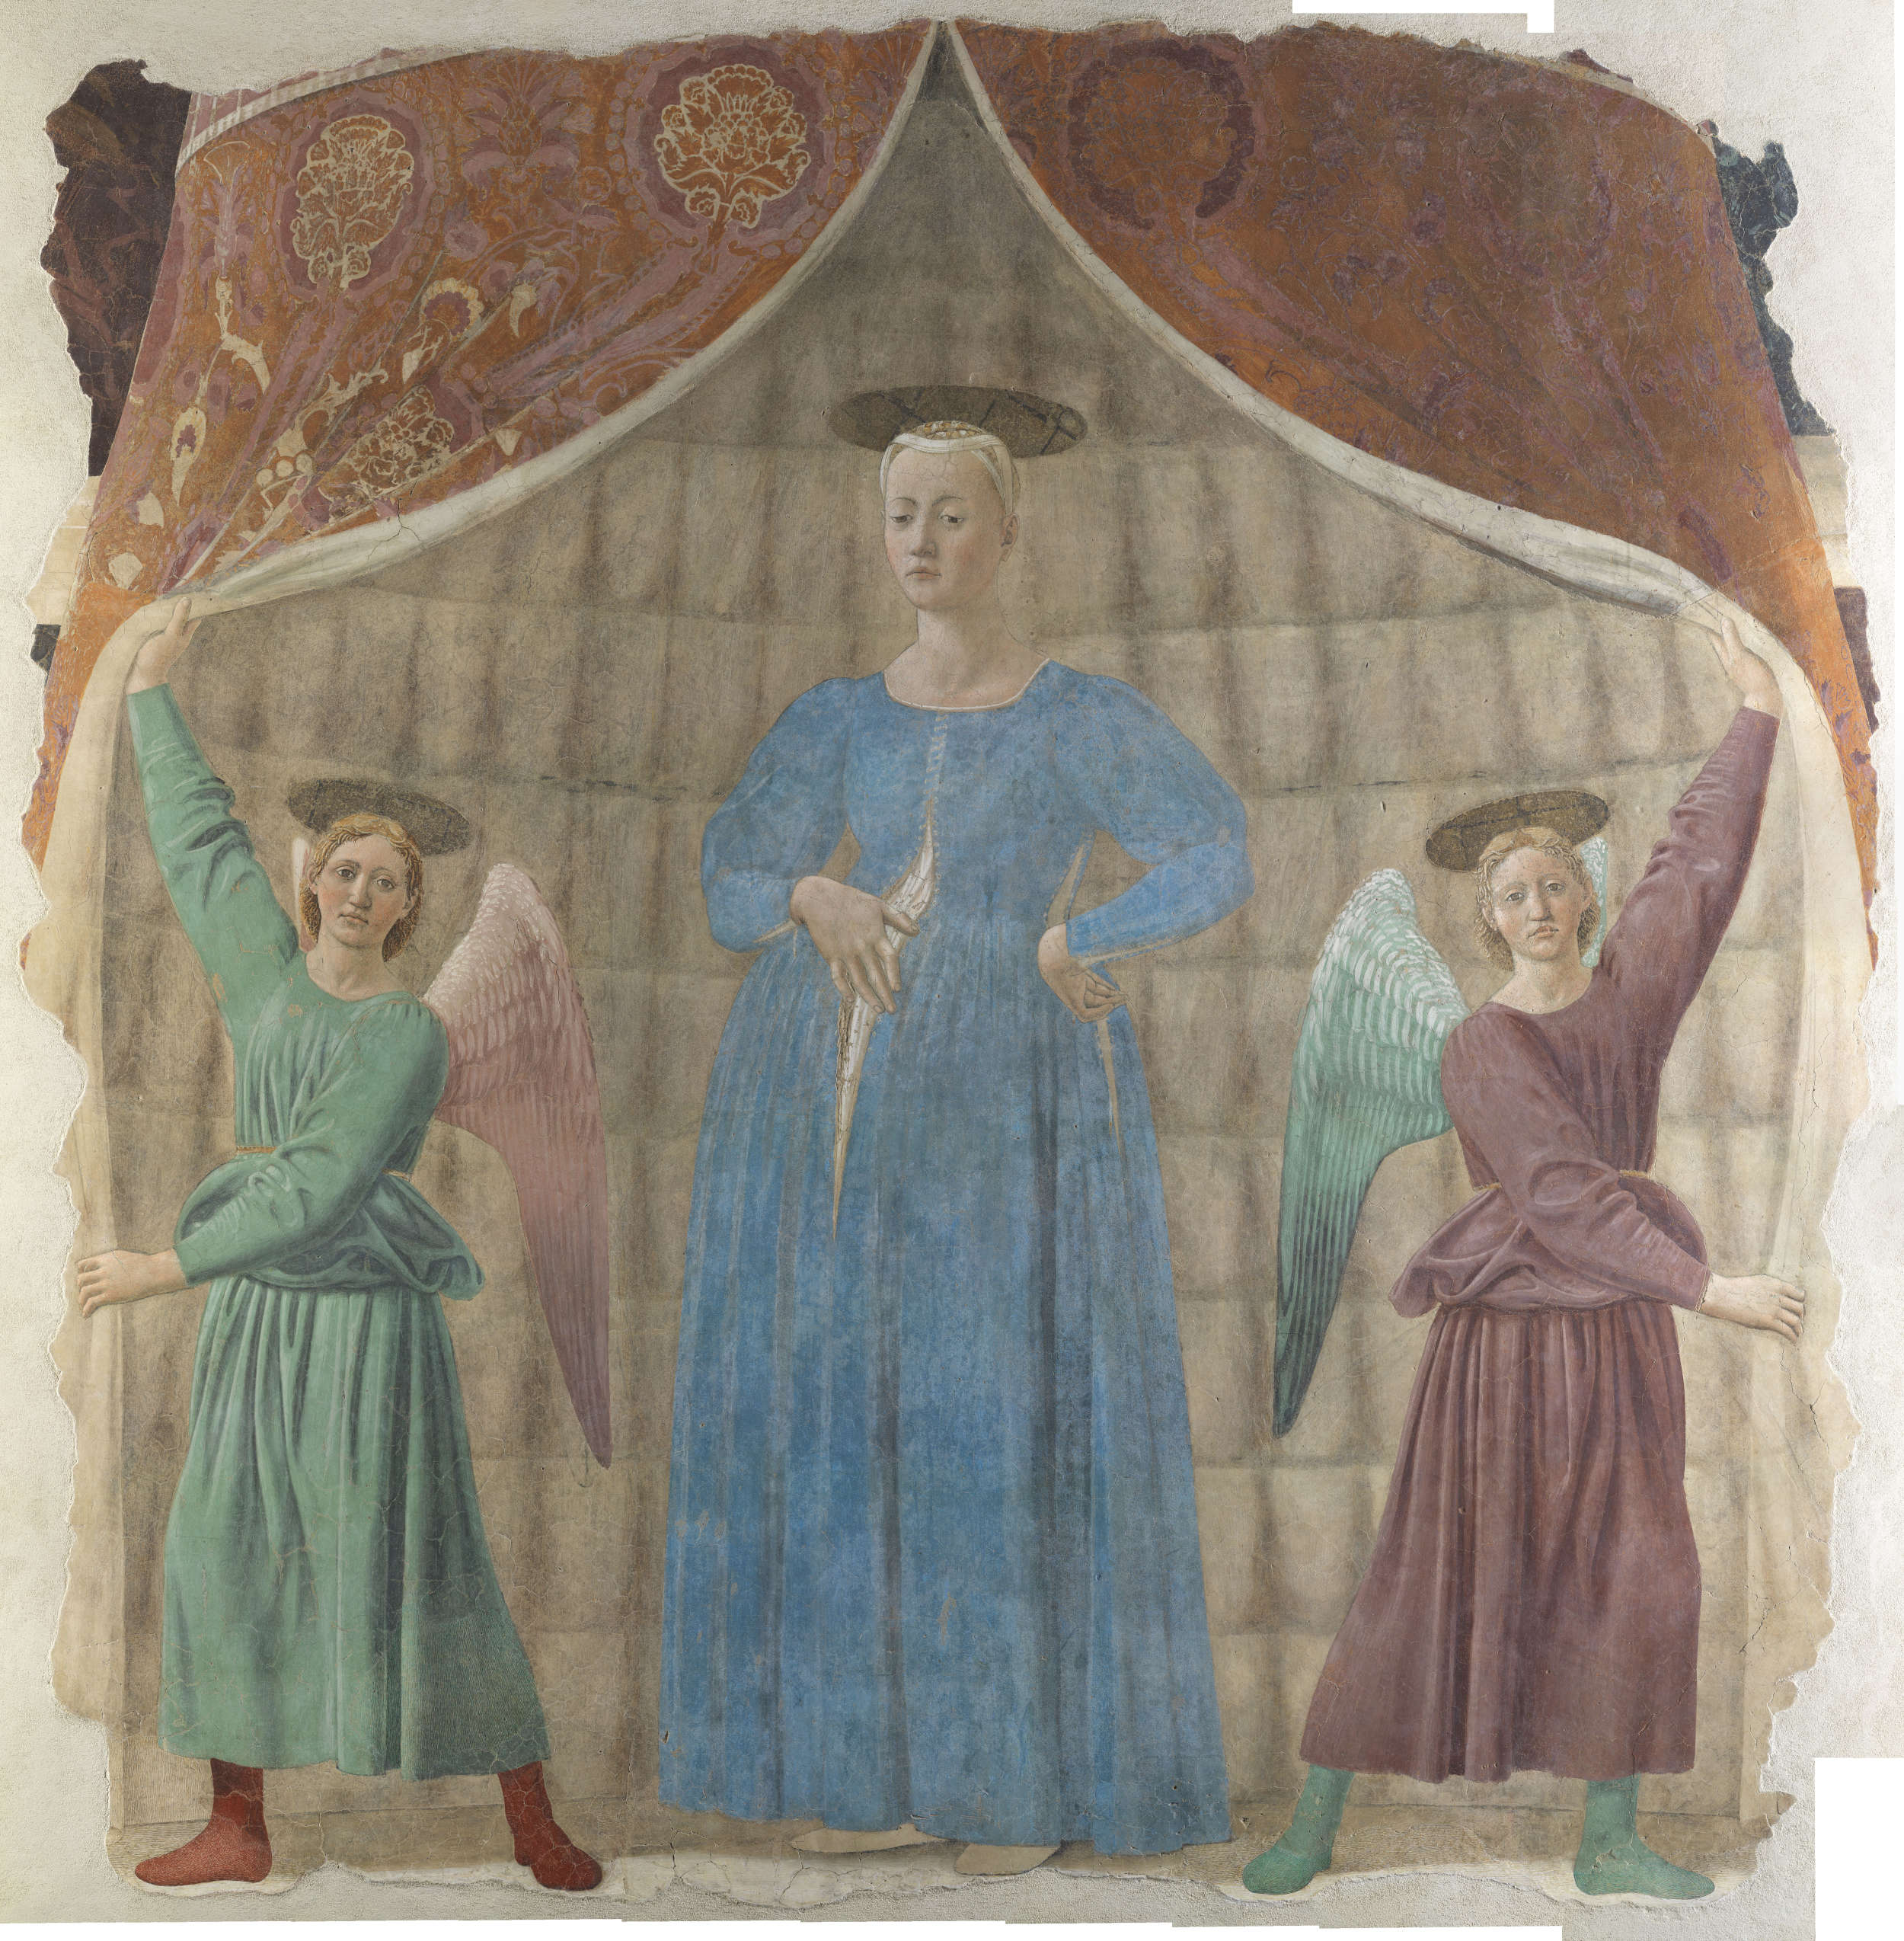 Piero della Francesca, Madonna del Parto (c. 1450-1465; detached fresco, 260 x 203 cm; Monterchi, Musei Civici Madonna del Parto)